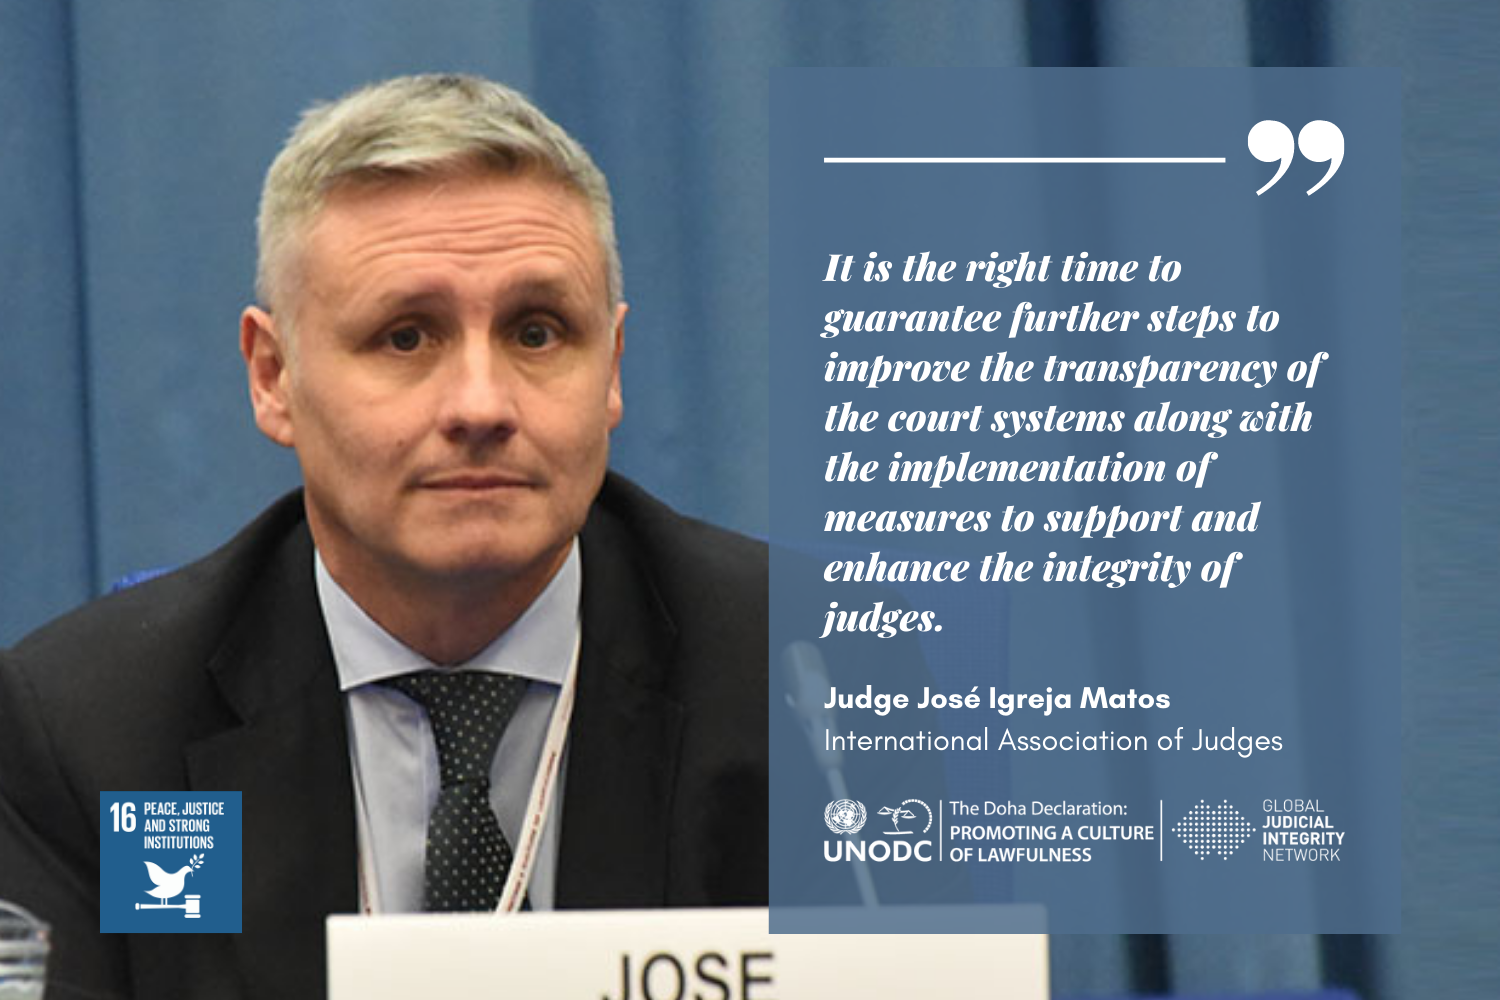 Judicial integrity: a fundamental commitment